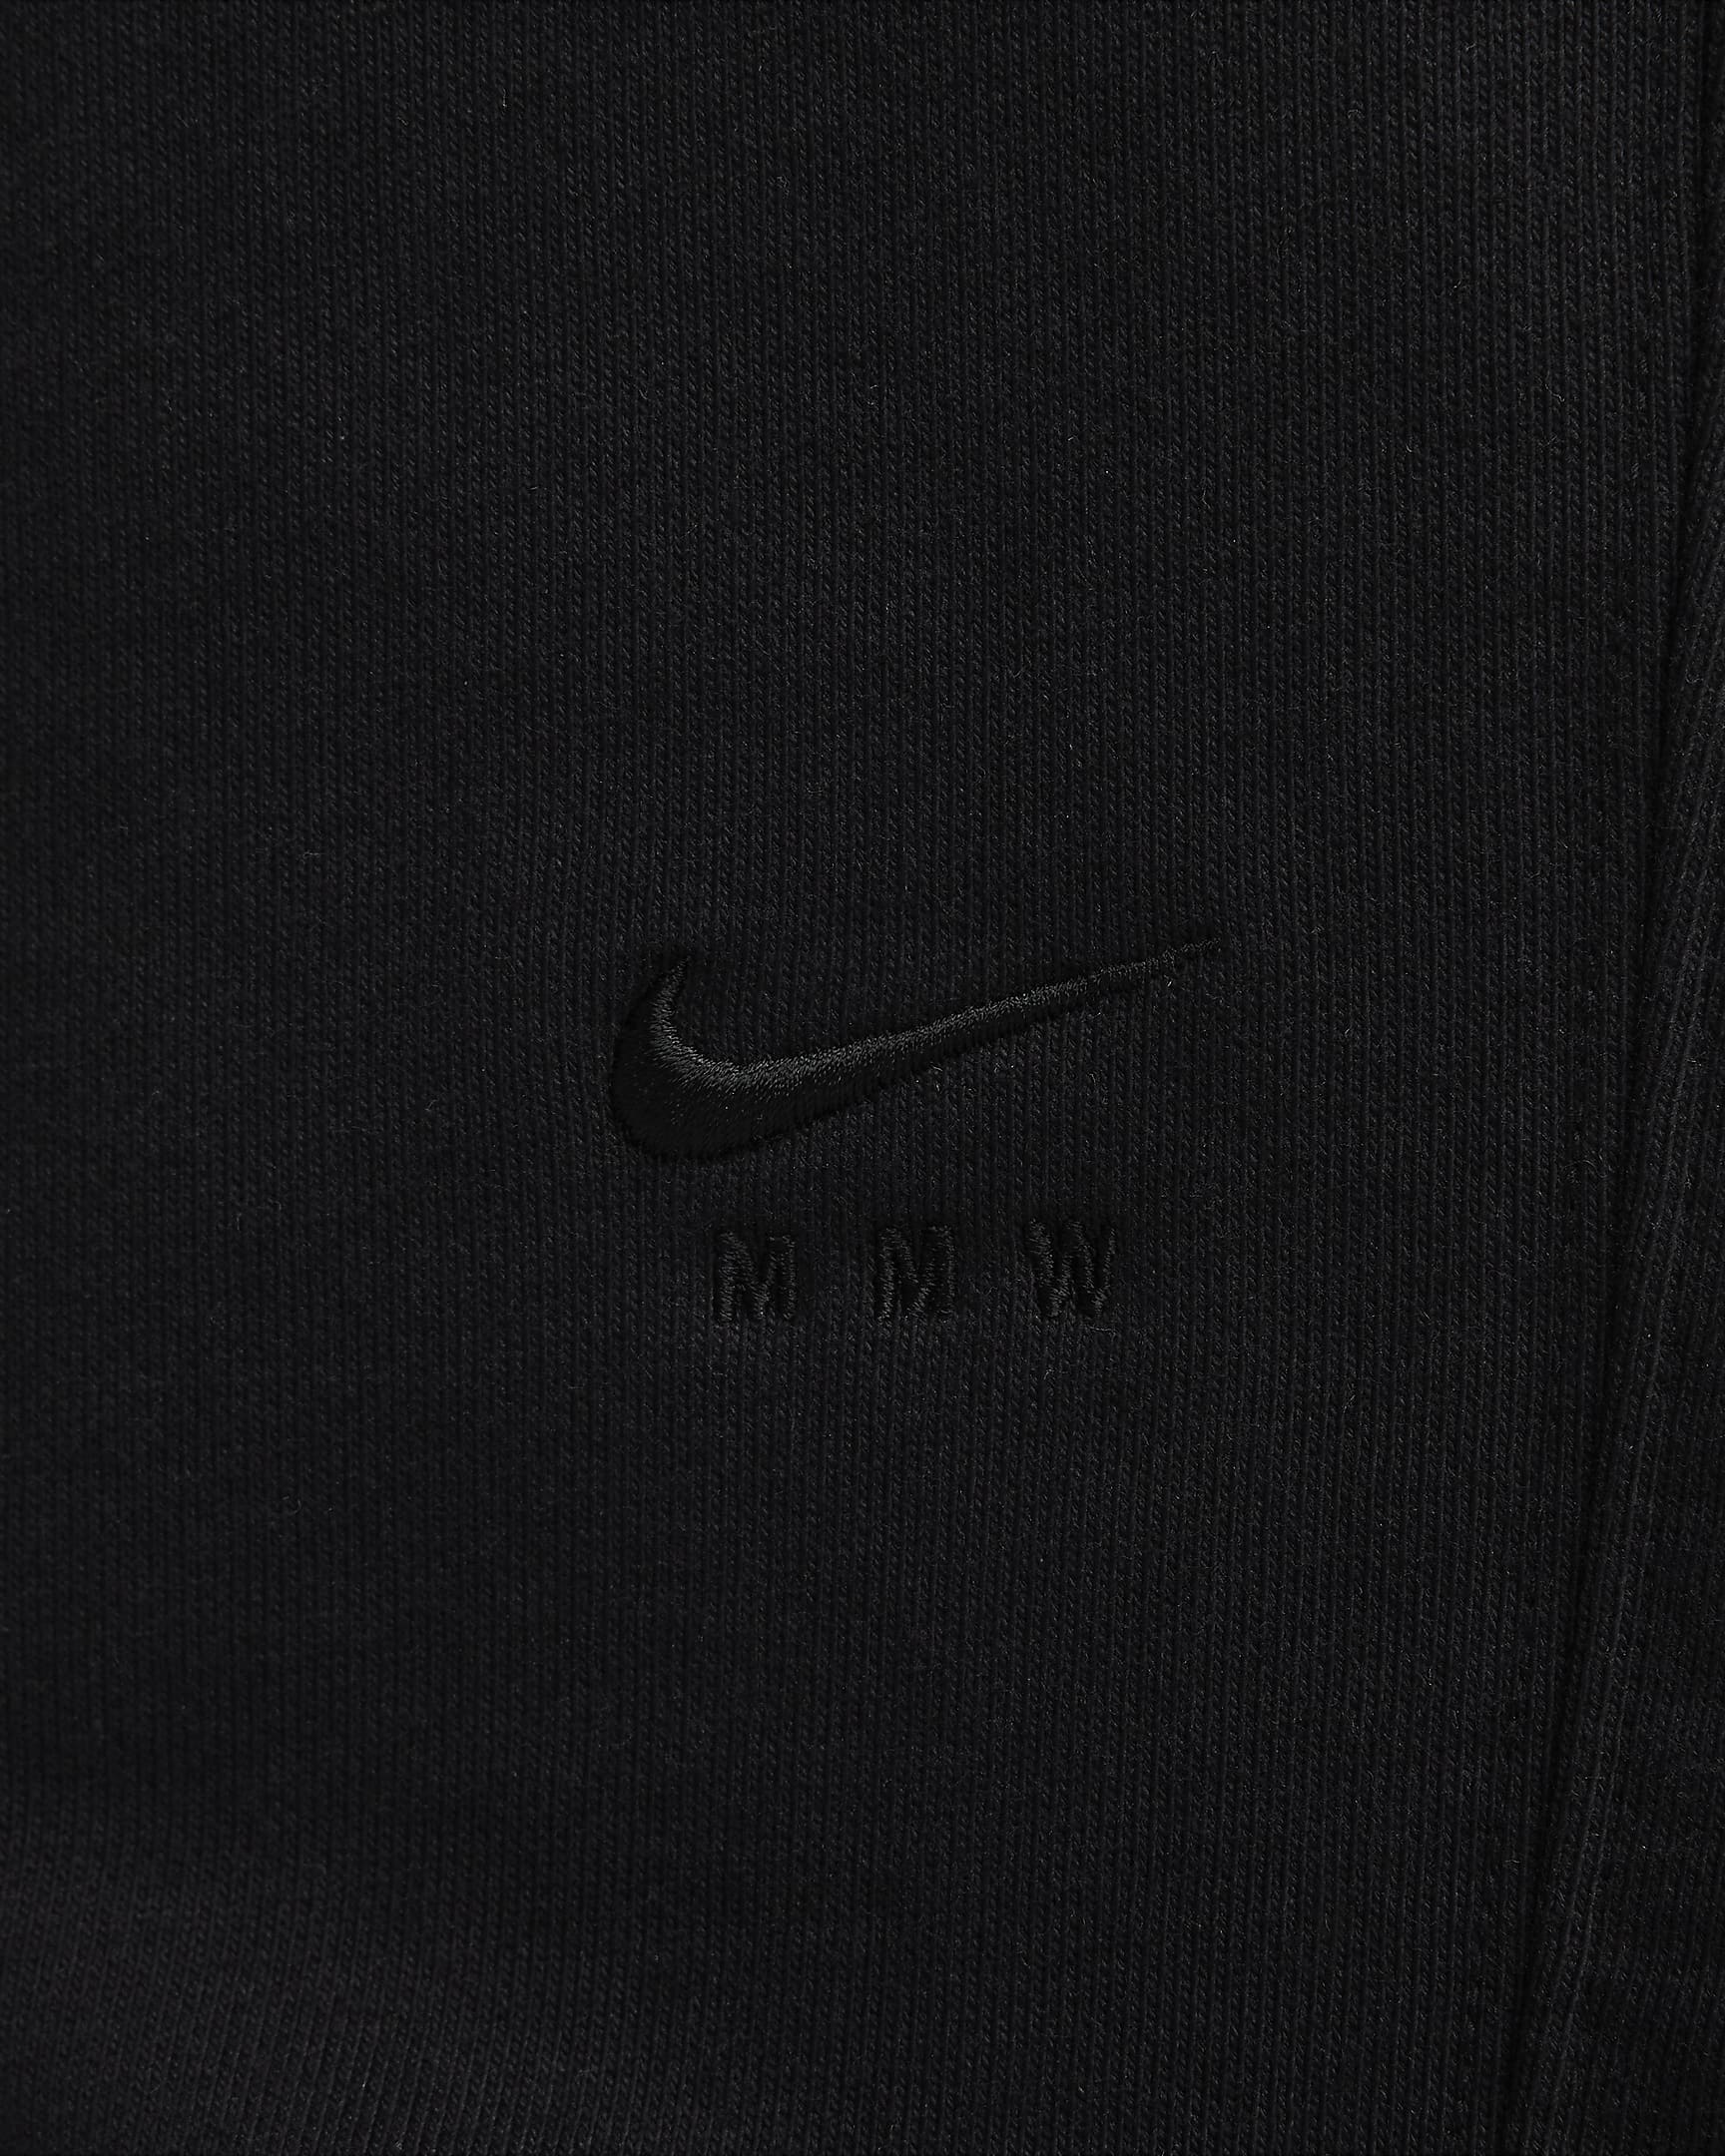 Nike x MMW Fleece Pants - Black